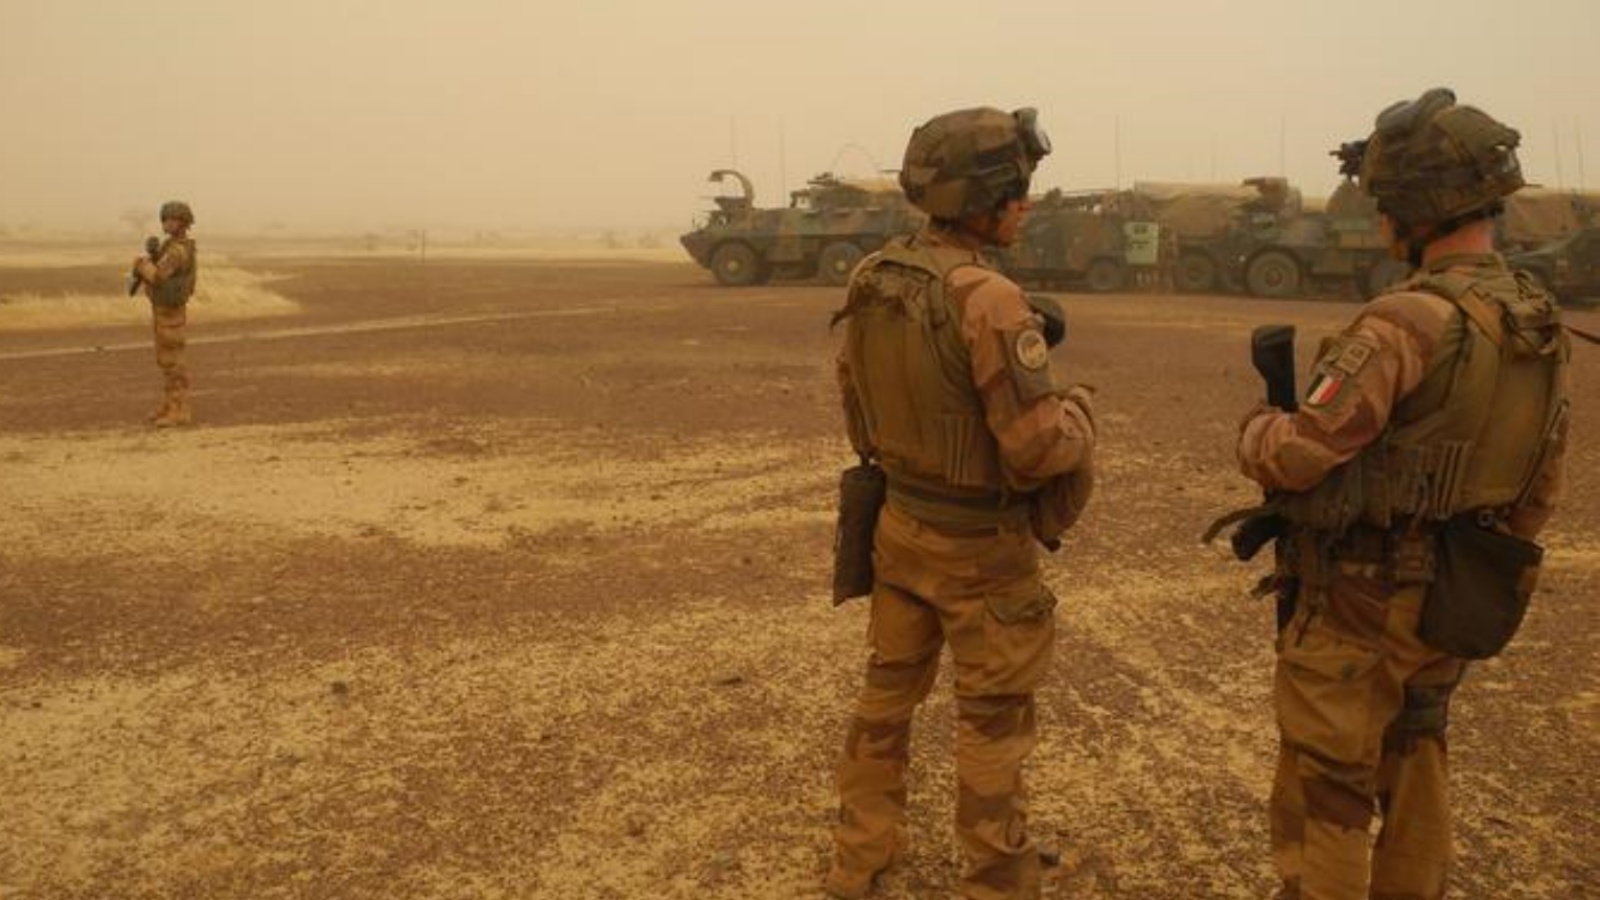 جنود فرنسيون في مالي (توضيحية)